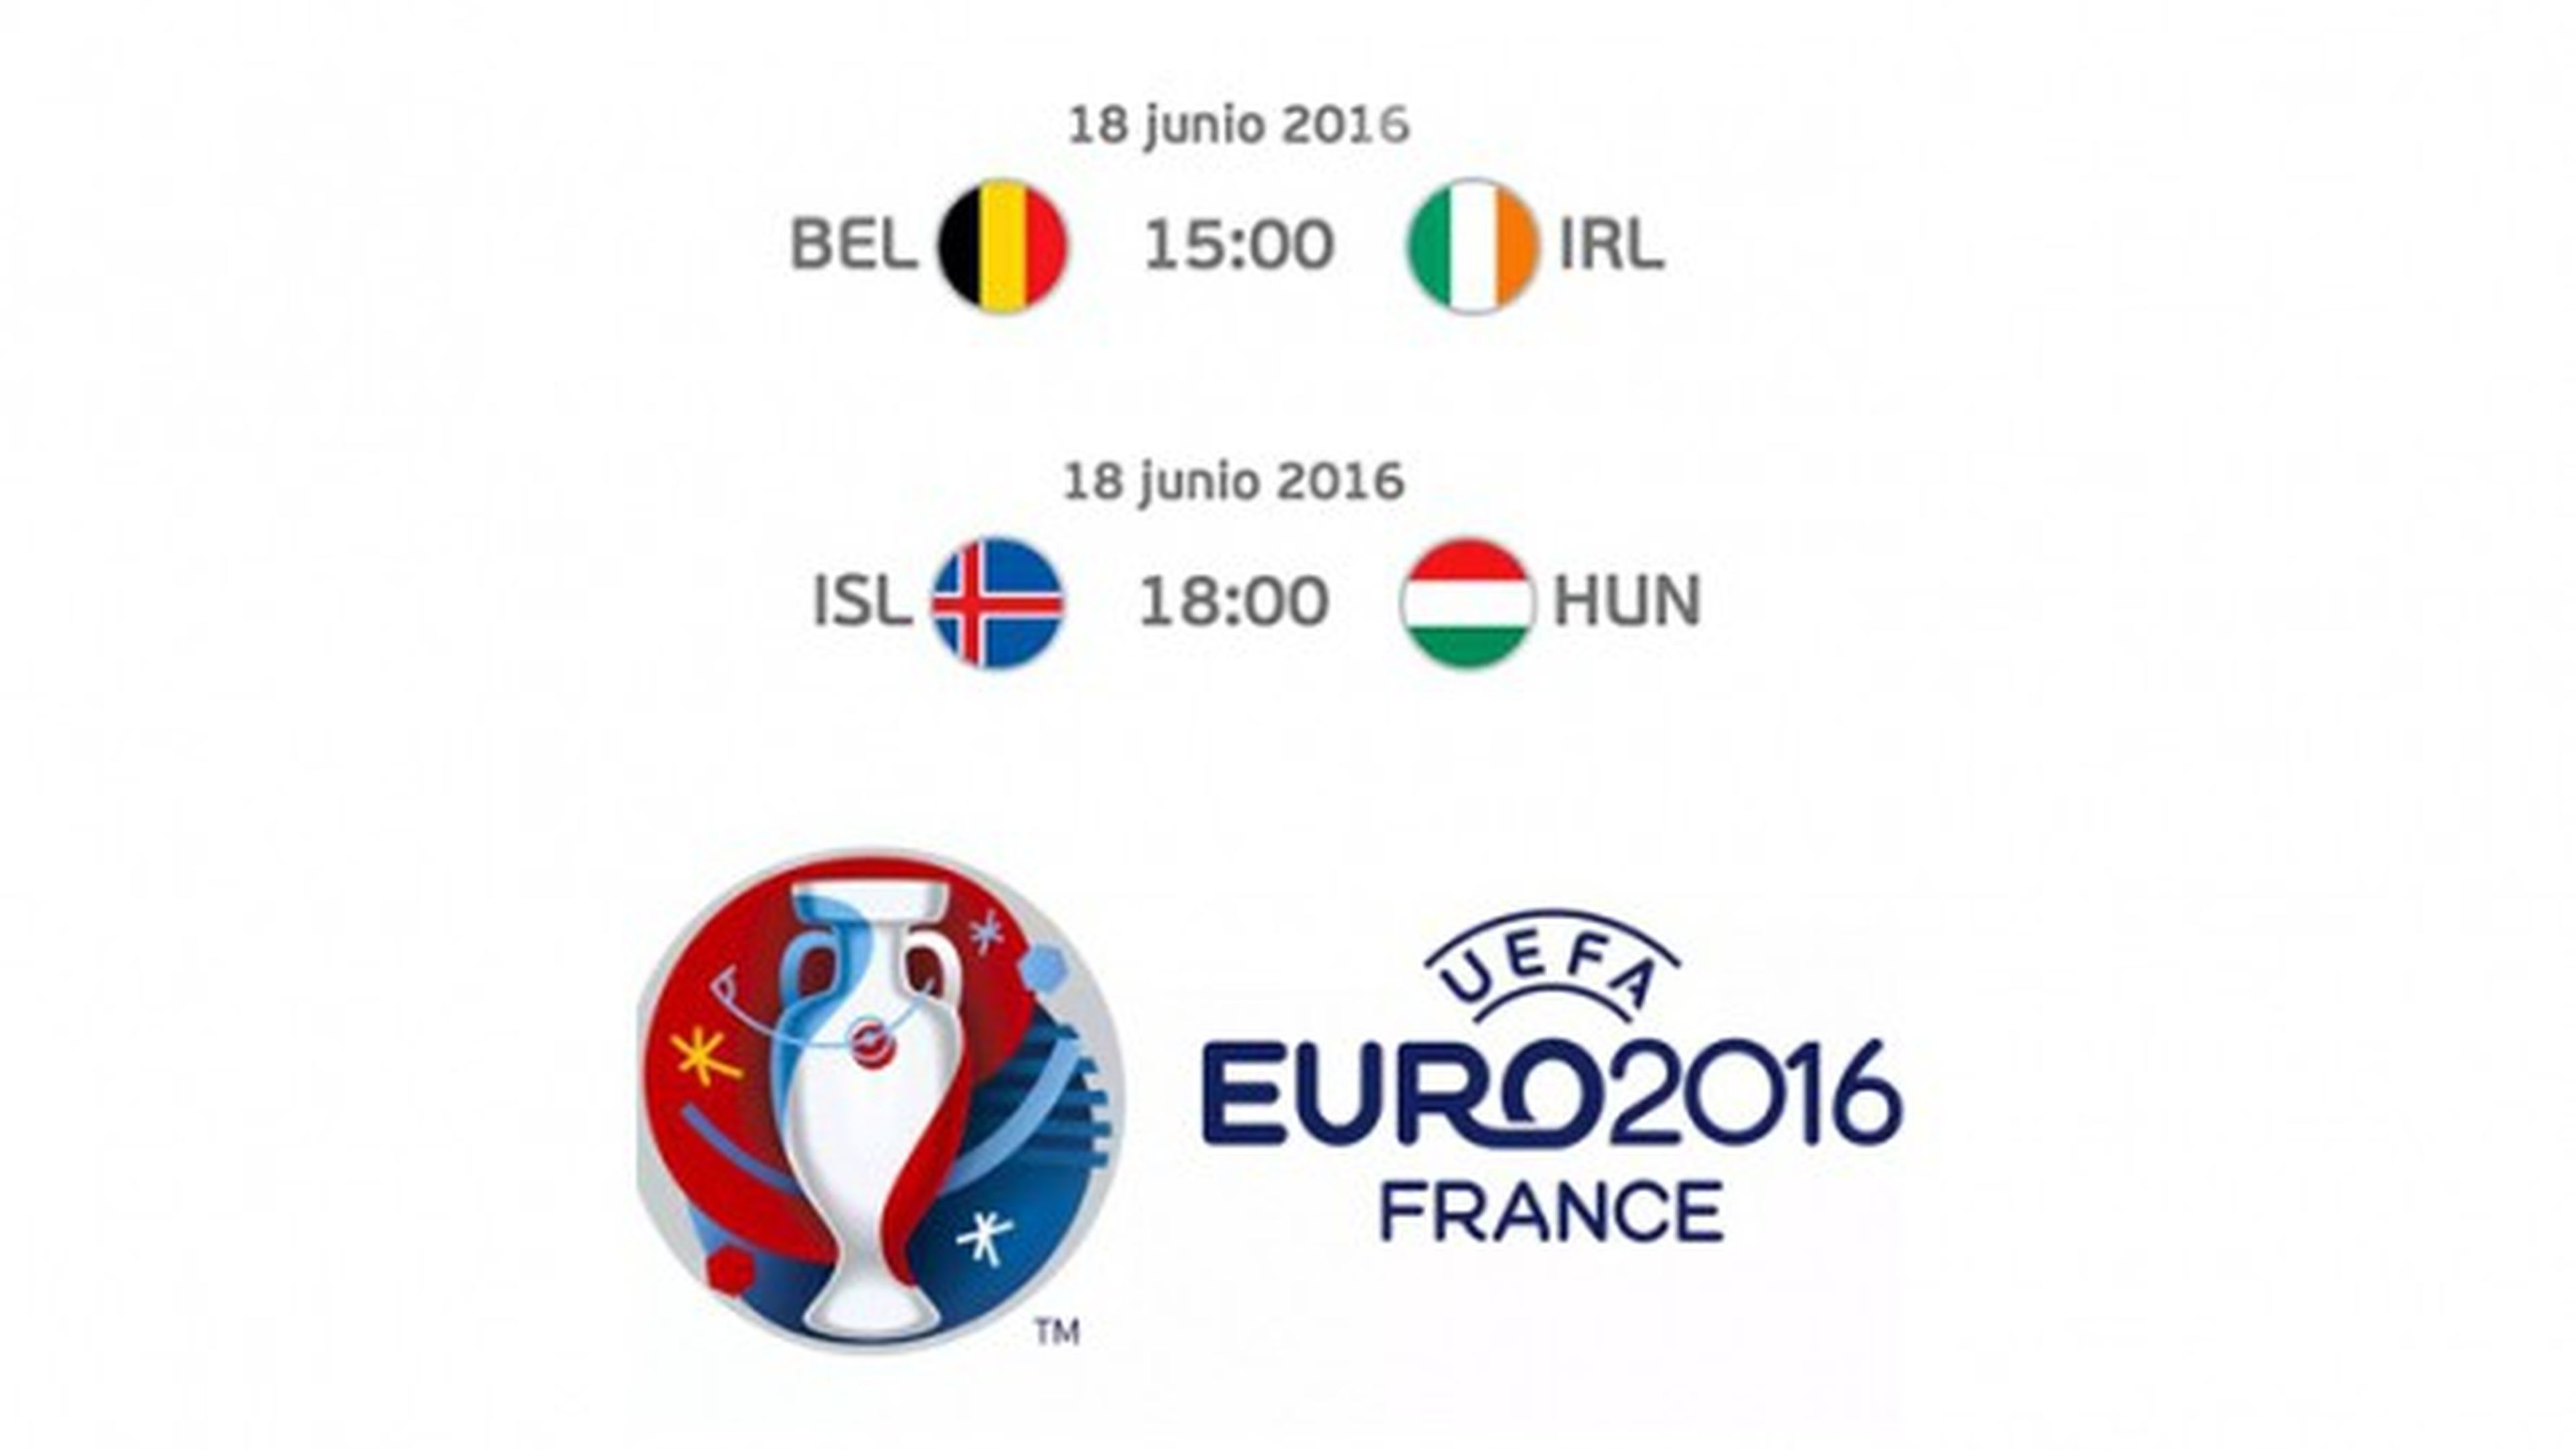 Bélgica-Irlanda e Islandia-Hungría, cómo ver online gratis los partidos de la Euro 2016 de hoy